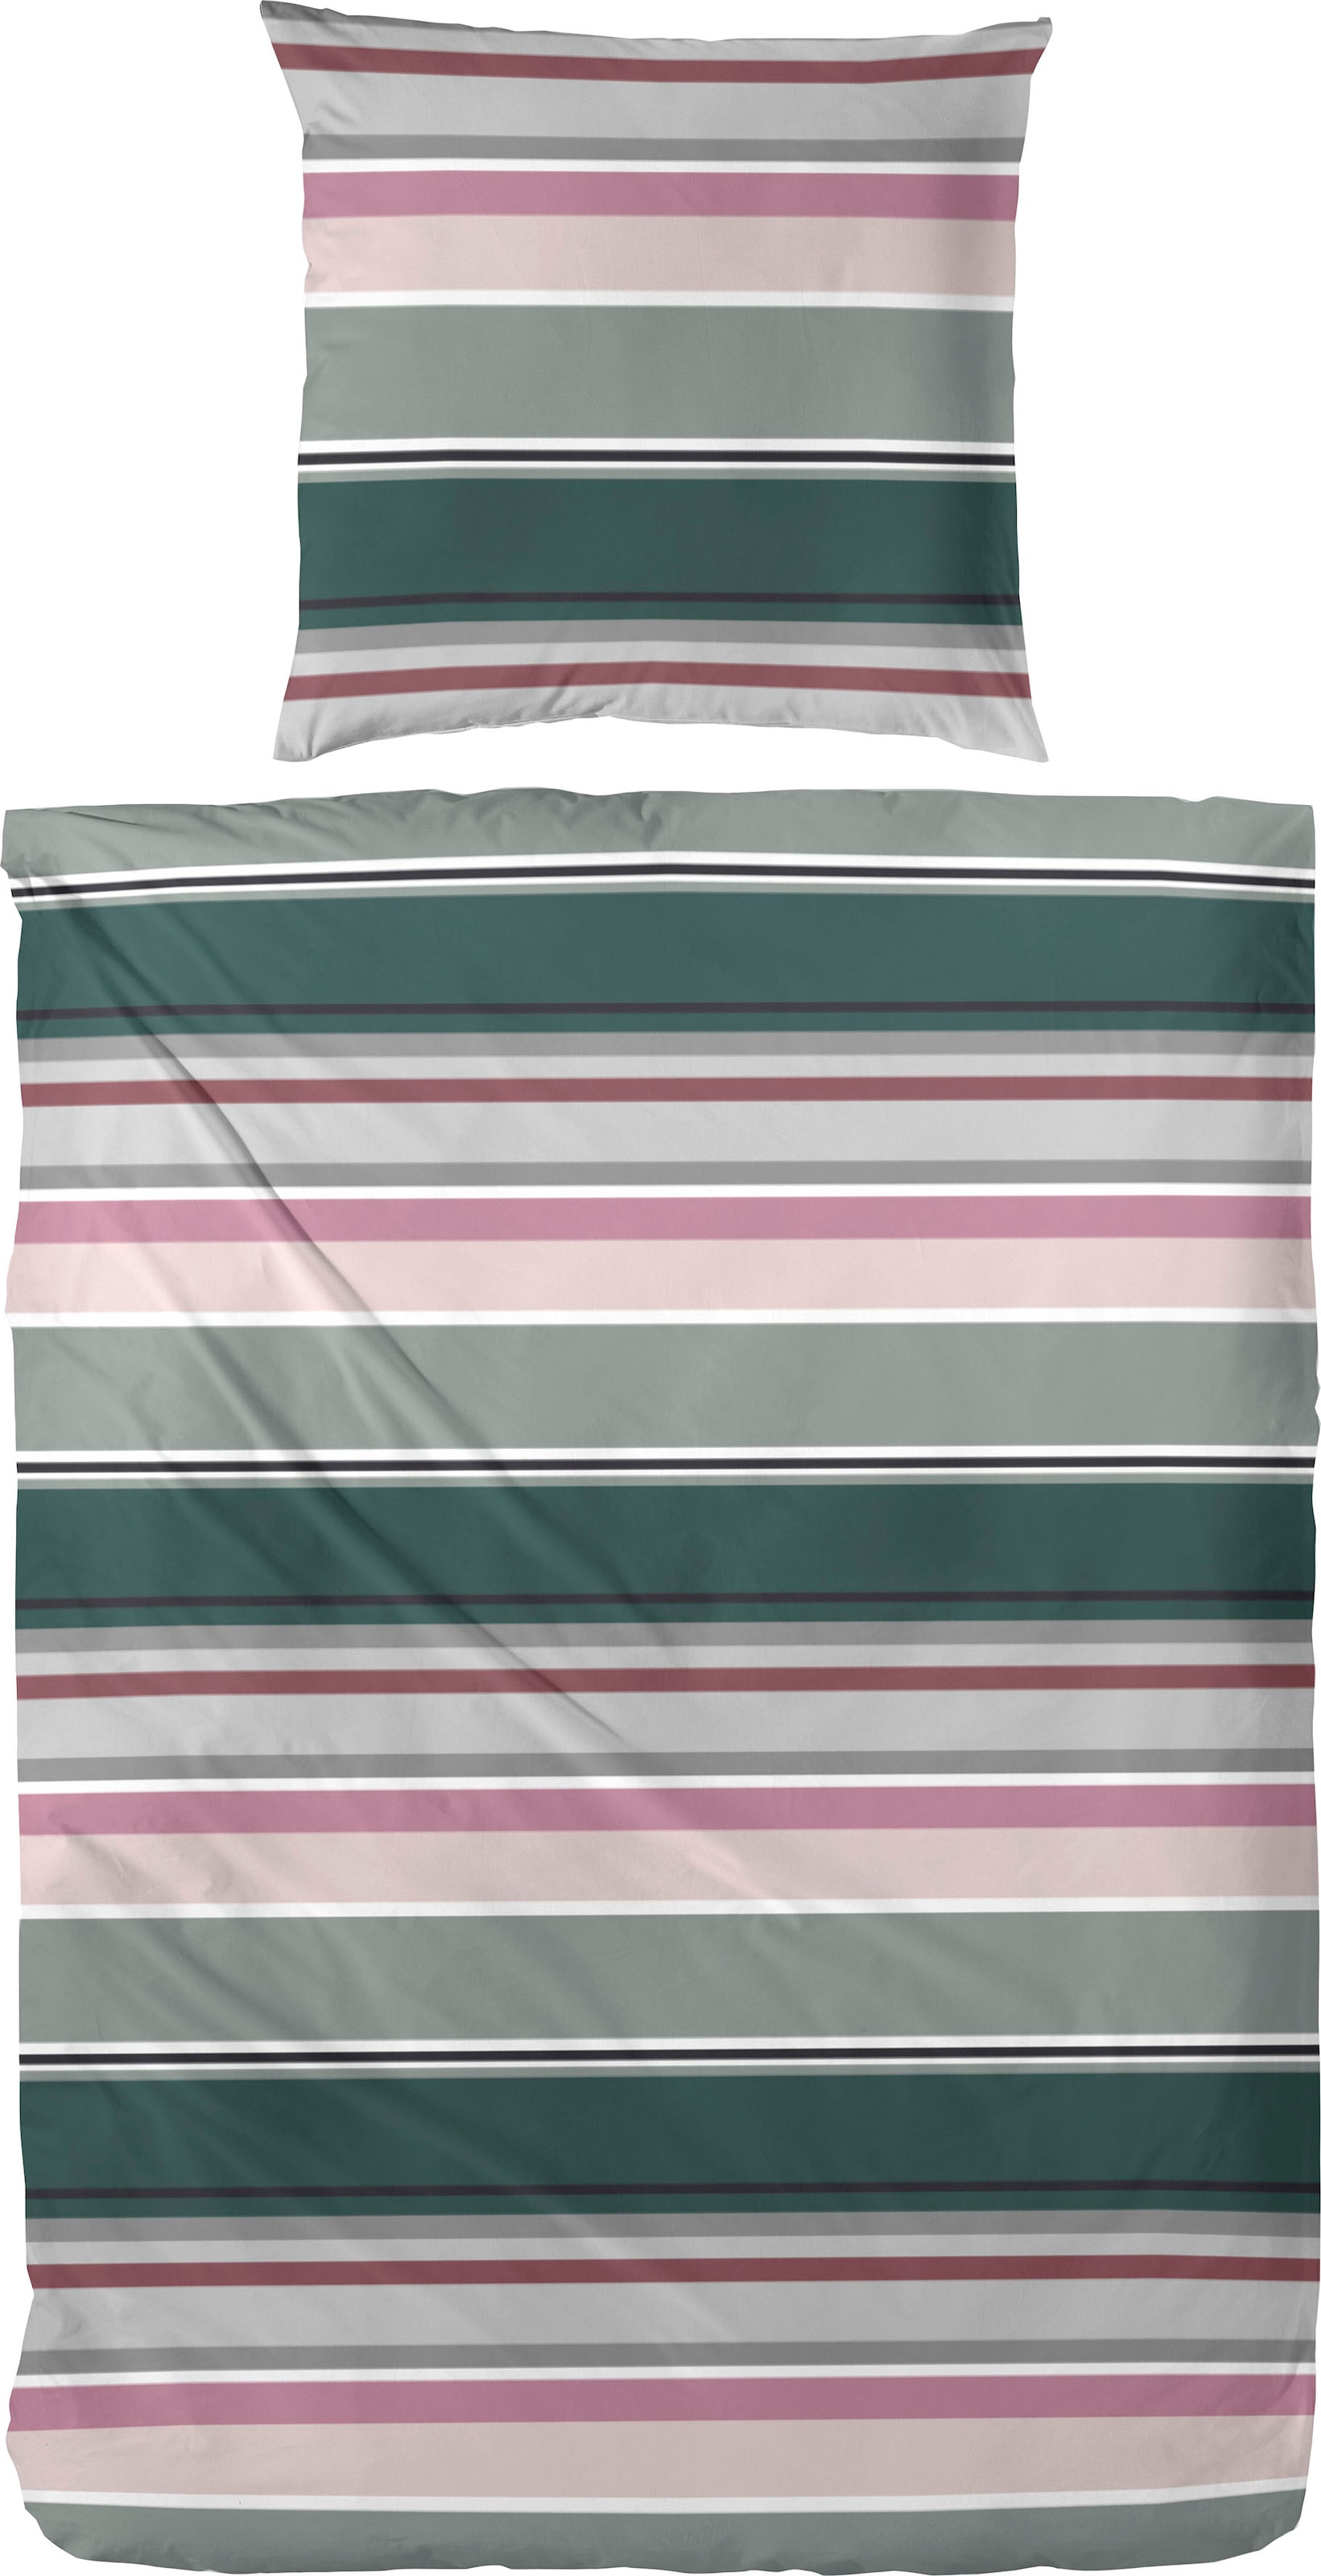 Primera Bettwäsche "Late Summer Stripe", (2 tlg.), mit modernen Streifen in frischen Farben